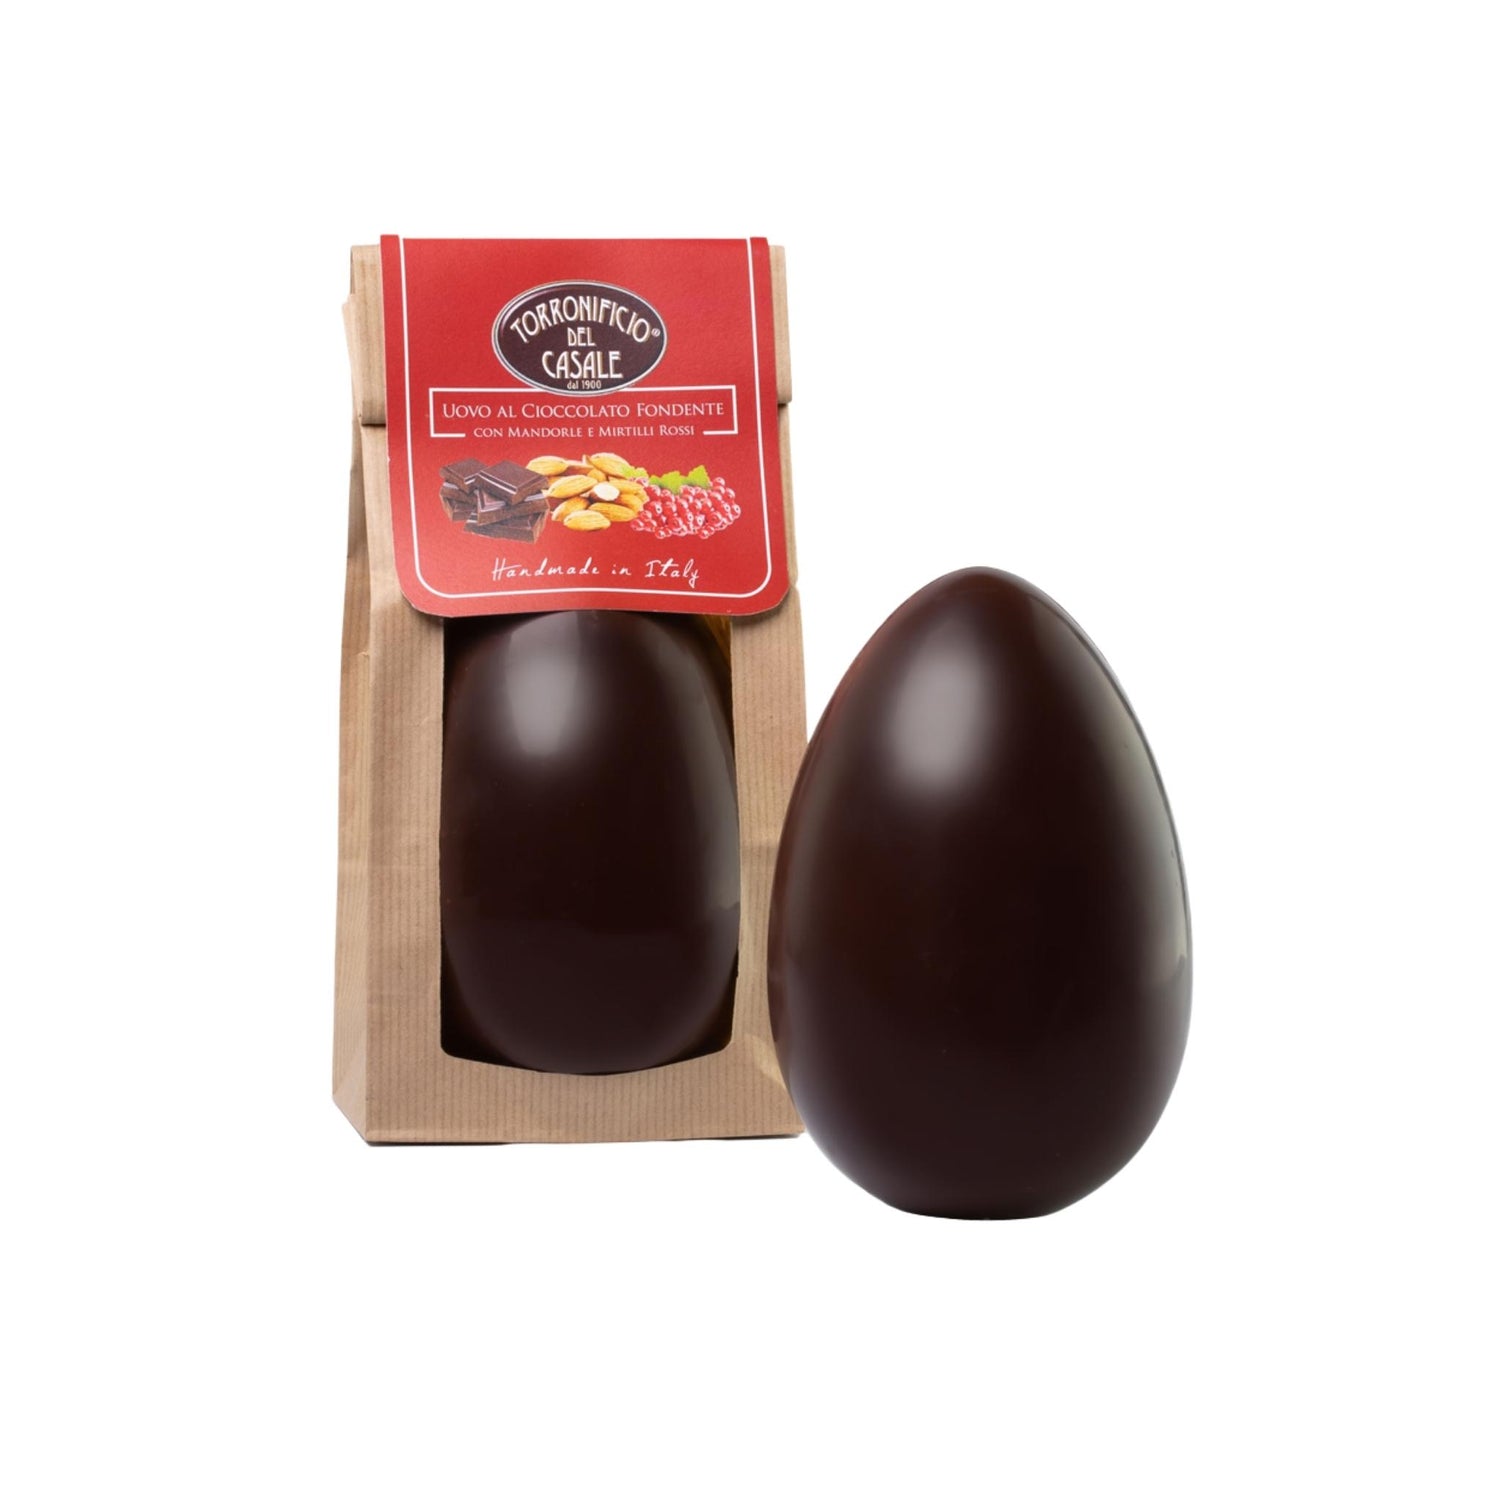 uovo-di-pasqua-al-cioccolato-fondente-belga-con-mandorle-e-mirtilli-350g